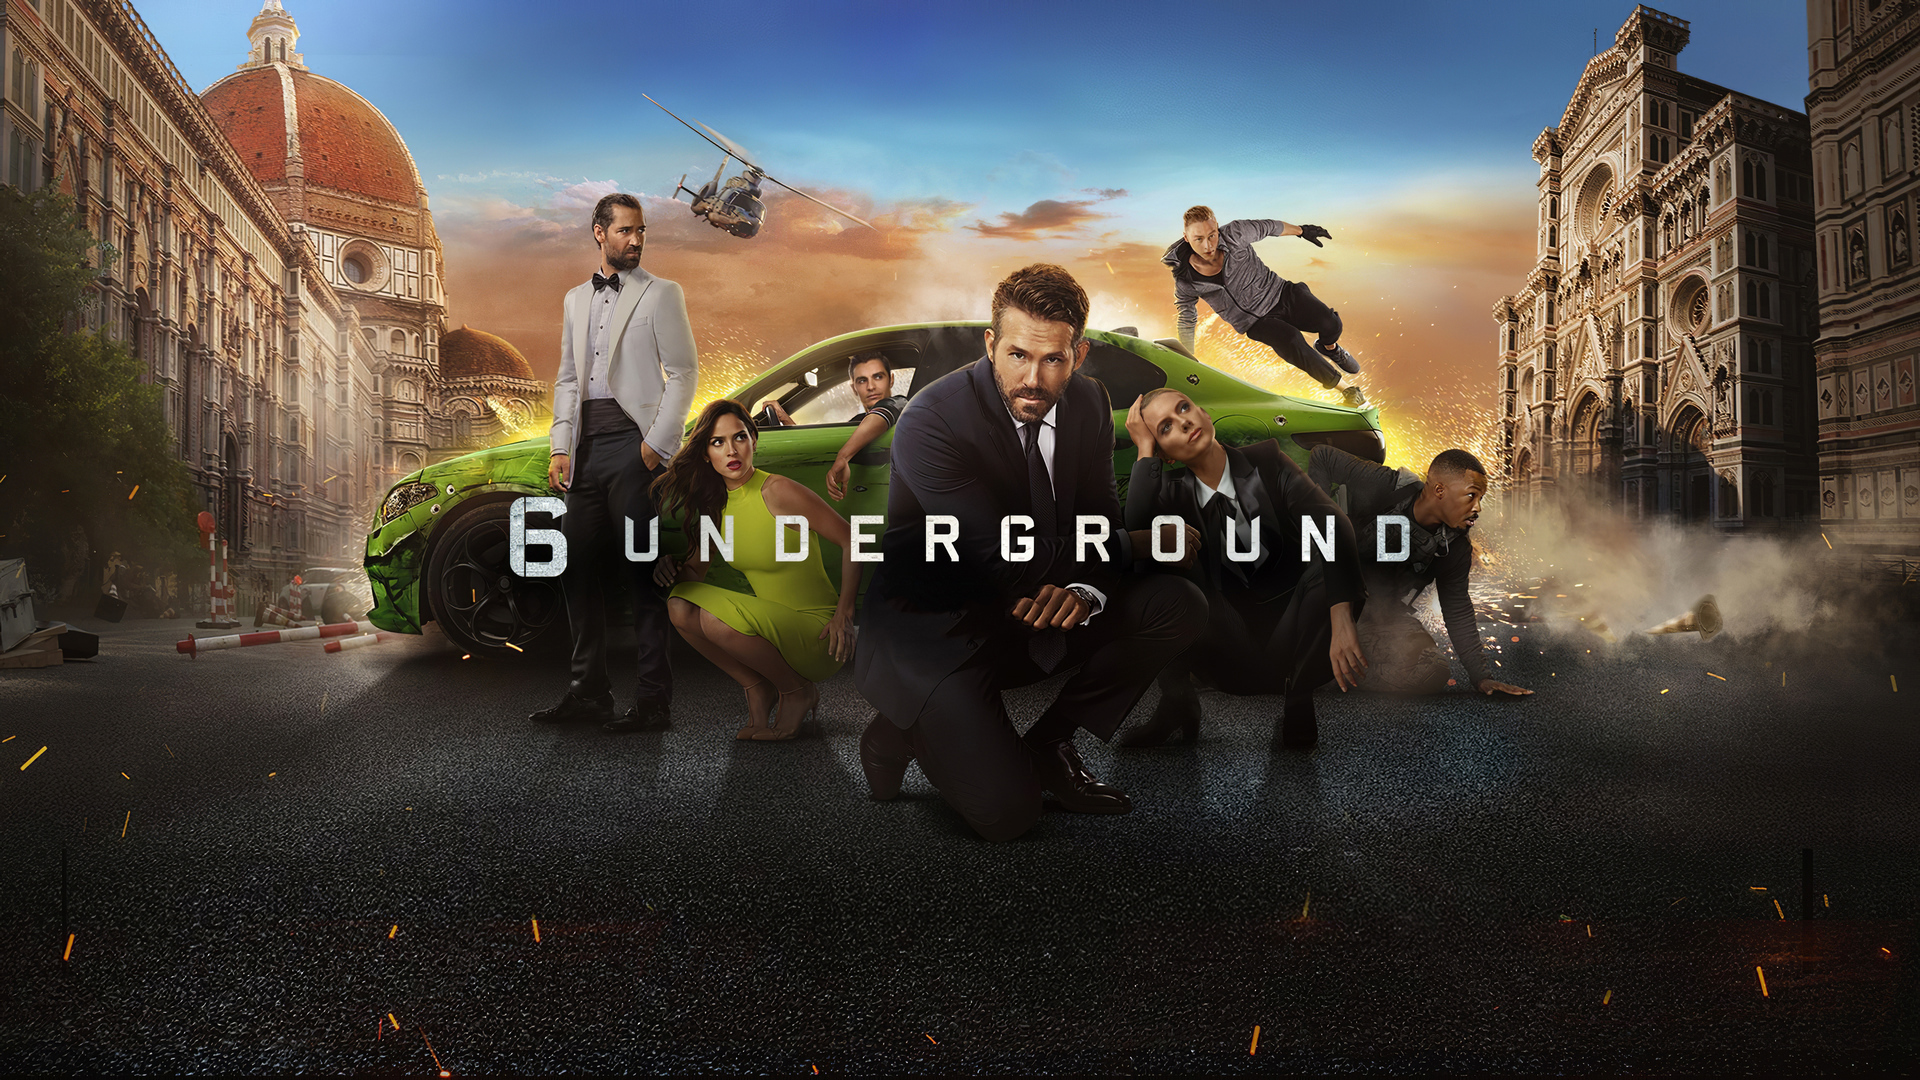 Movie 6 Underground HD Wallpaper | Background Image